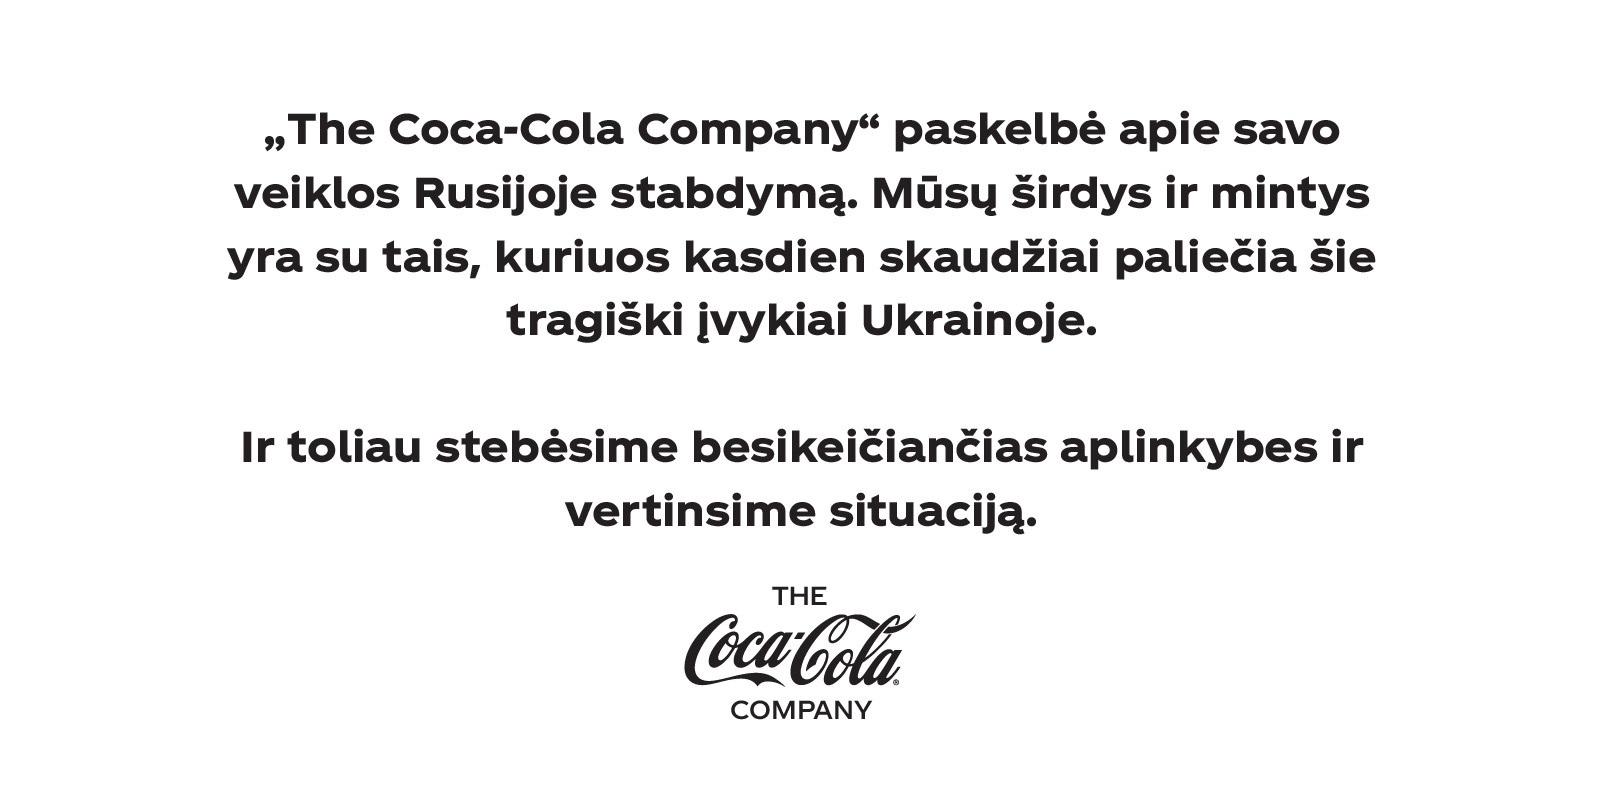 Coca‑Cola veiklos sustabdymas Rusijoje